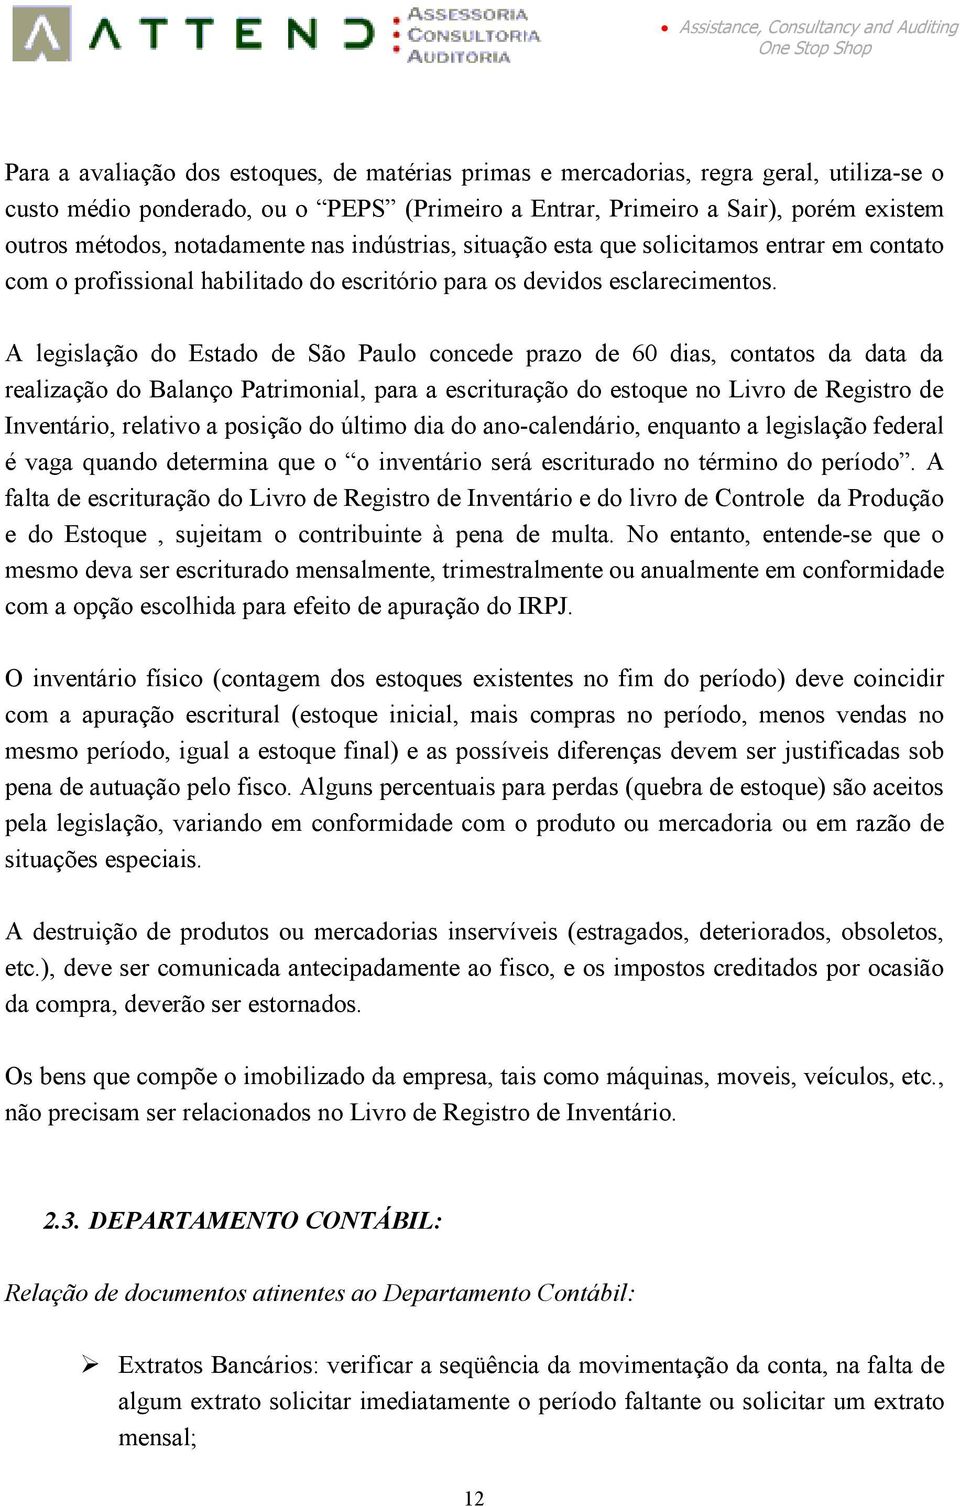 A legislação do Estado de São Paulo concede prazo de 60 dias, contatos da data da realização do Balanço Patrimonial, para a escrituração do estoque no Livro de Registro de Inventário, relativo a